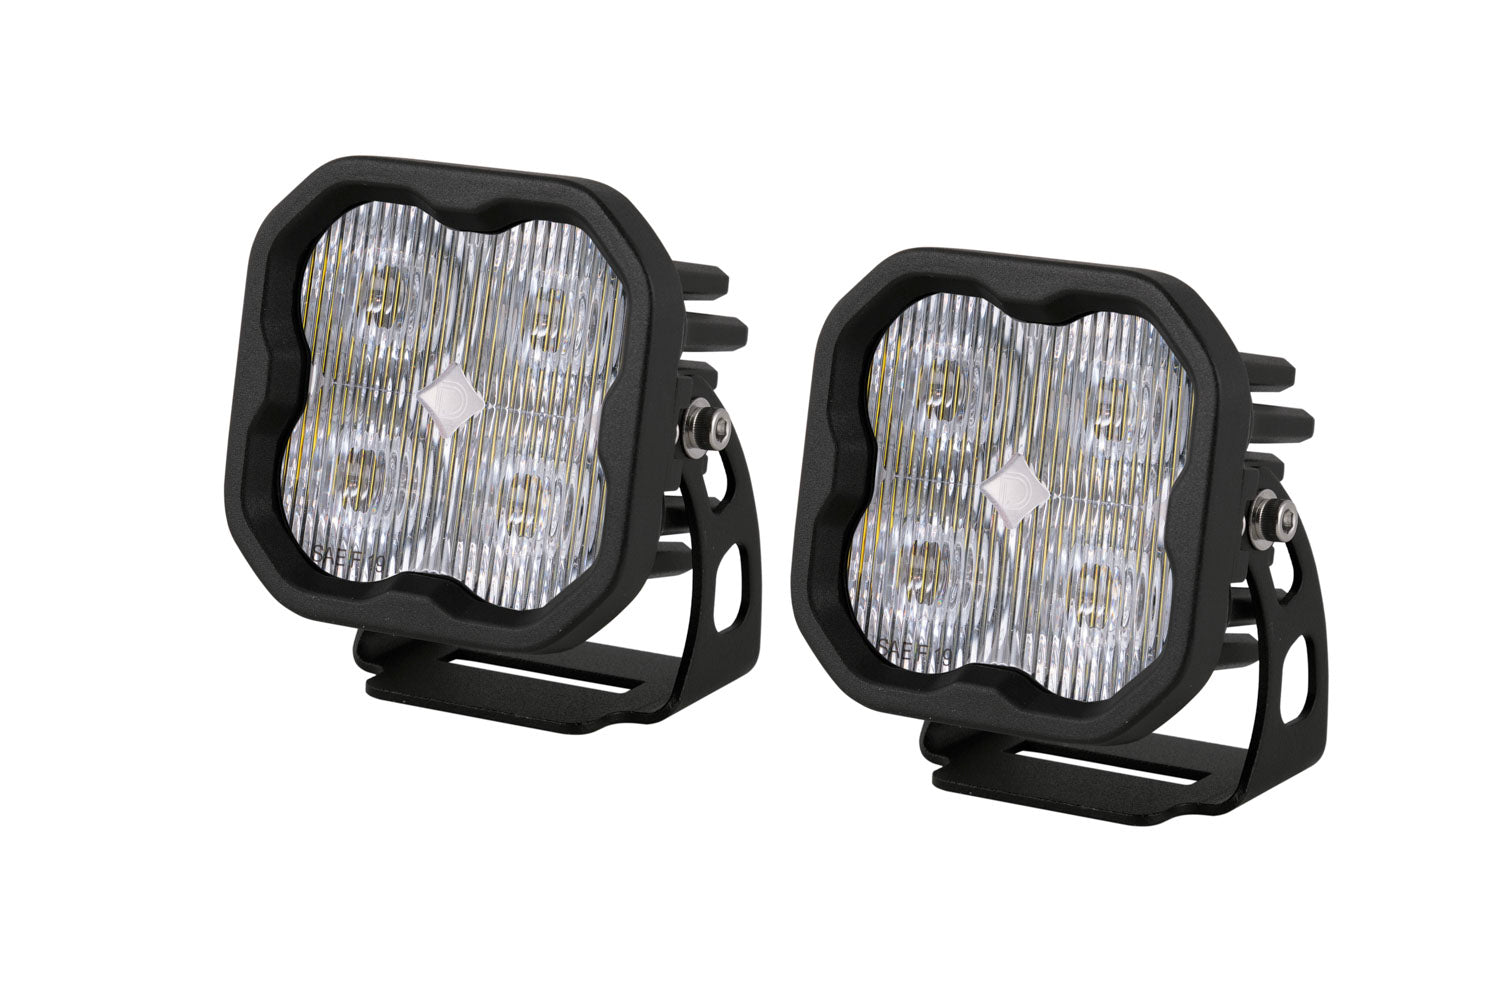 Diode Dynamics SS3 Max Backlit LED Pod Lights